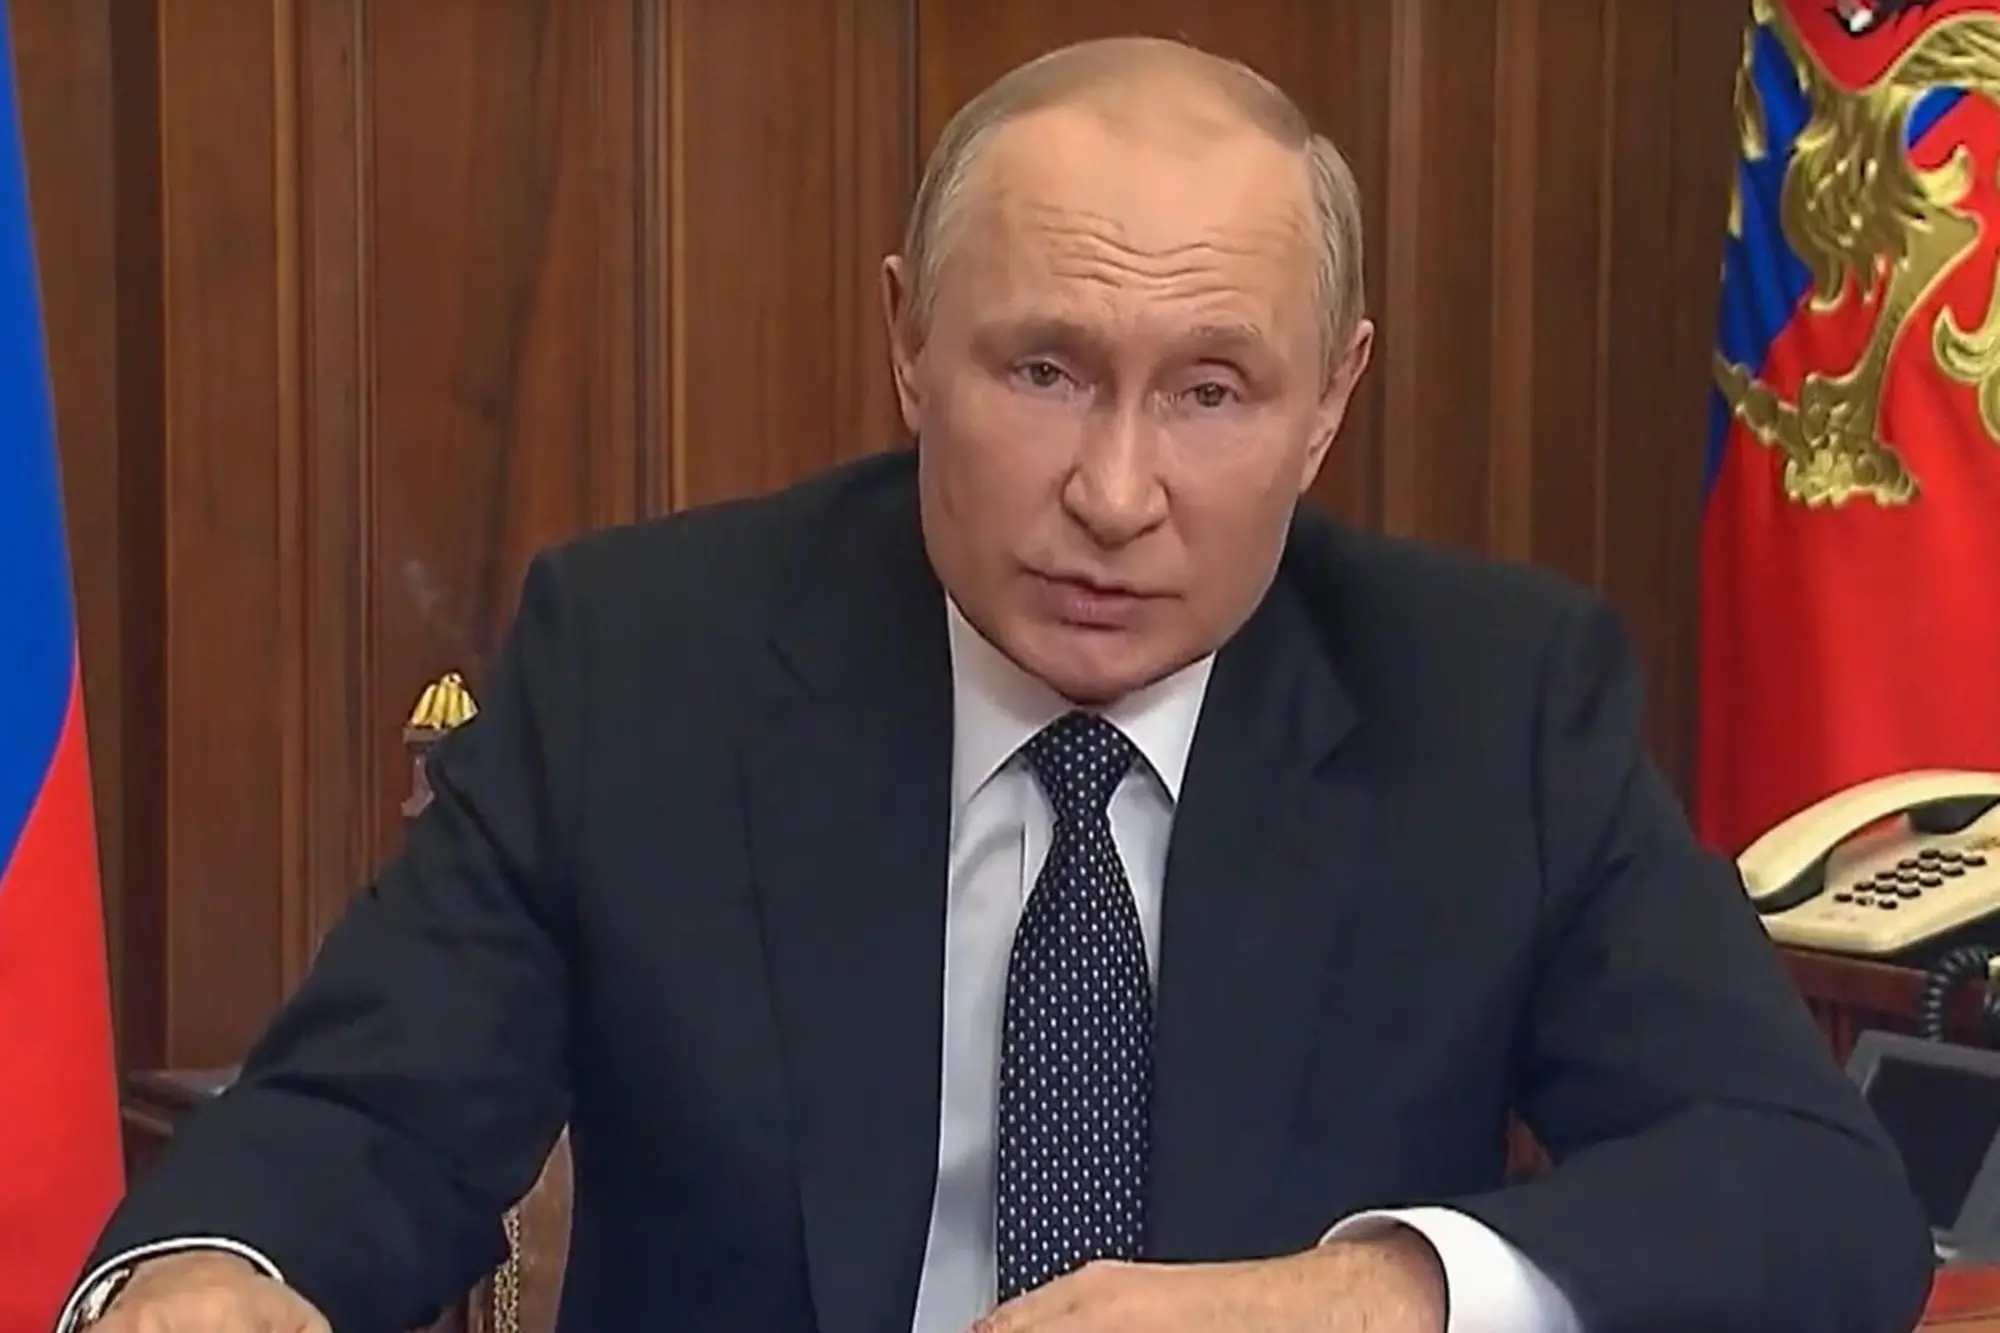 Un fermo immagine tratto da un video di Putin sul YouTube Russian Presidential Press Service. ANSA/YOUTUBE EDITORIAL USE ONLY NO SALES NPK